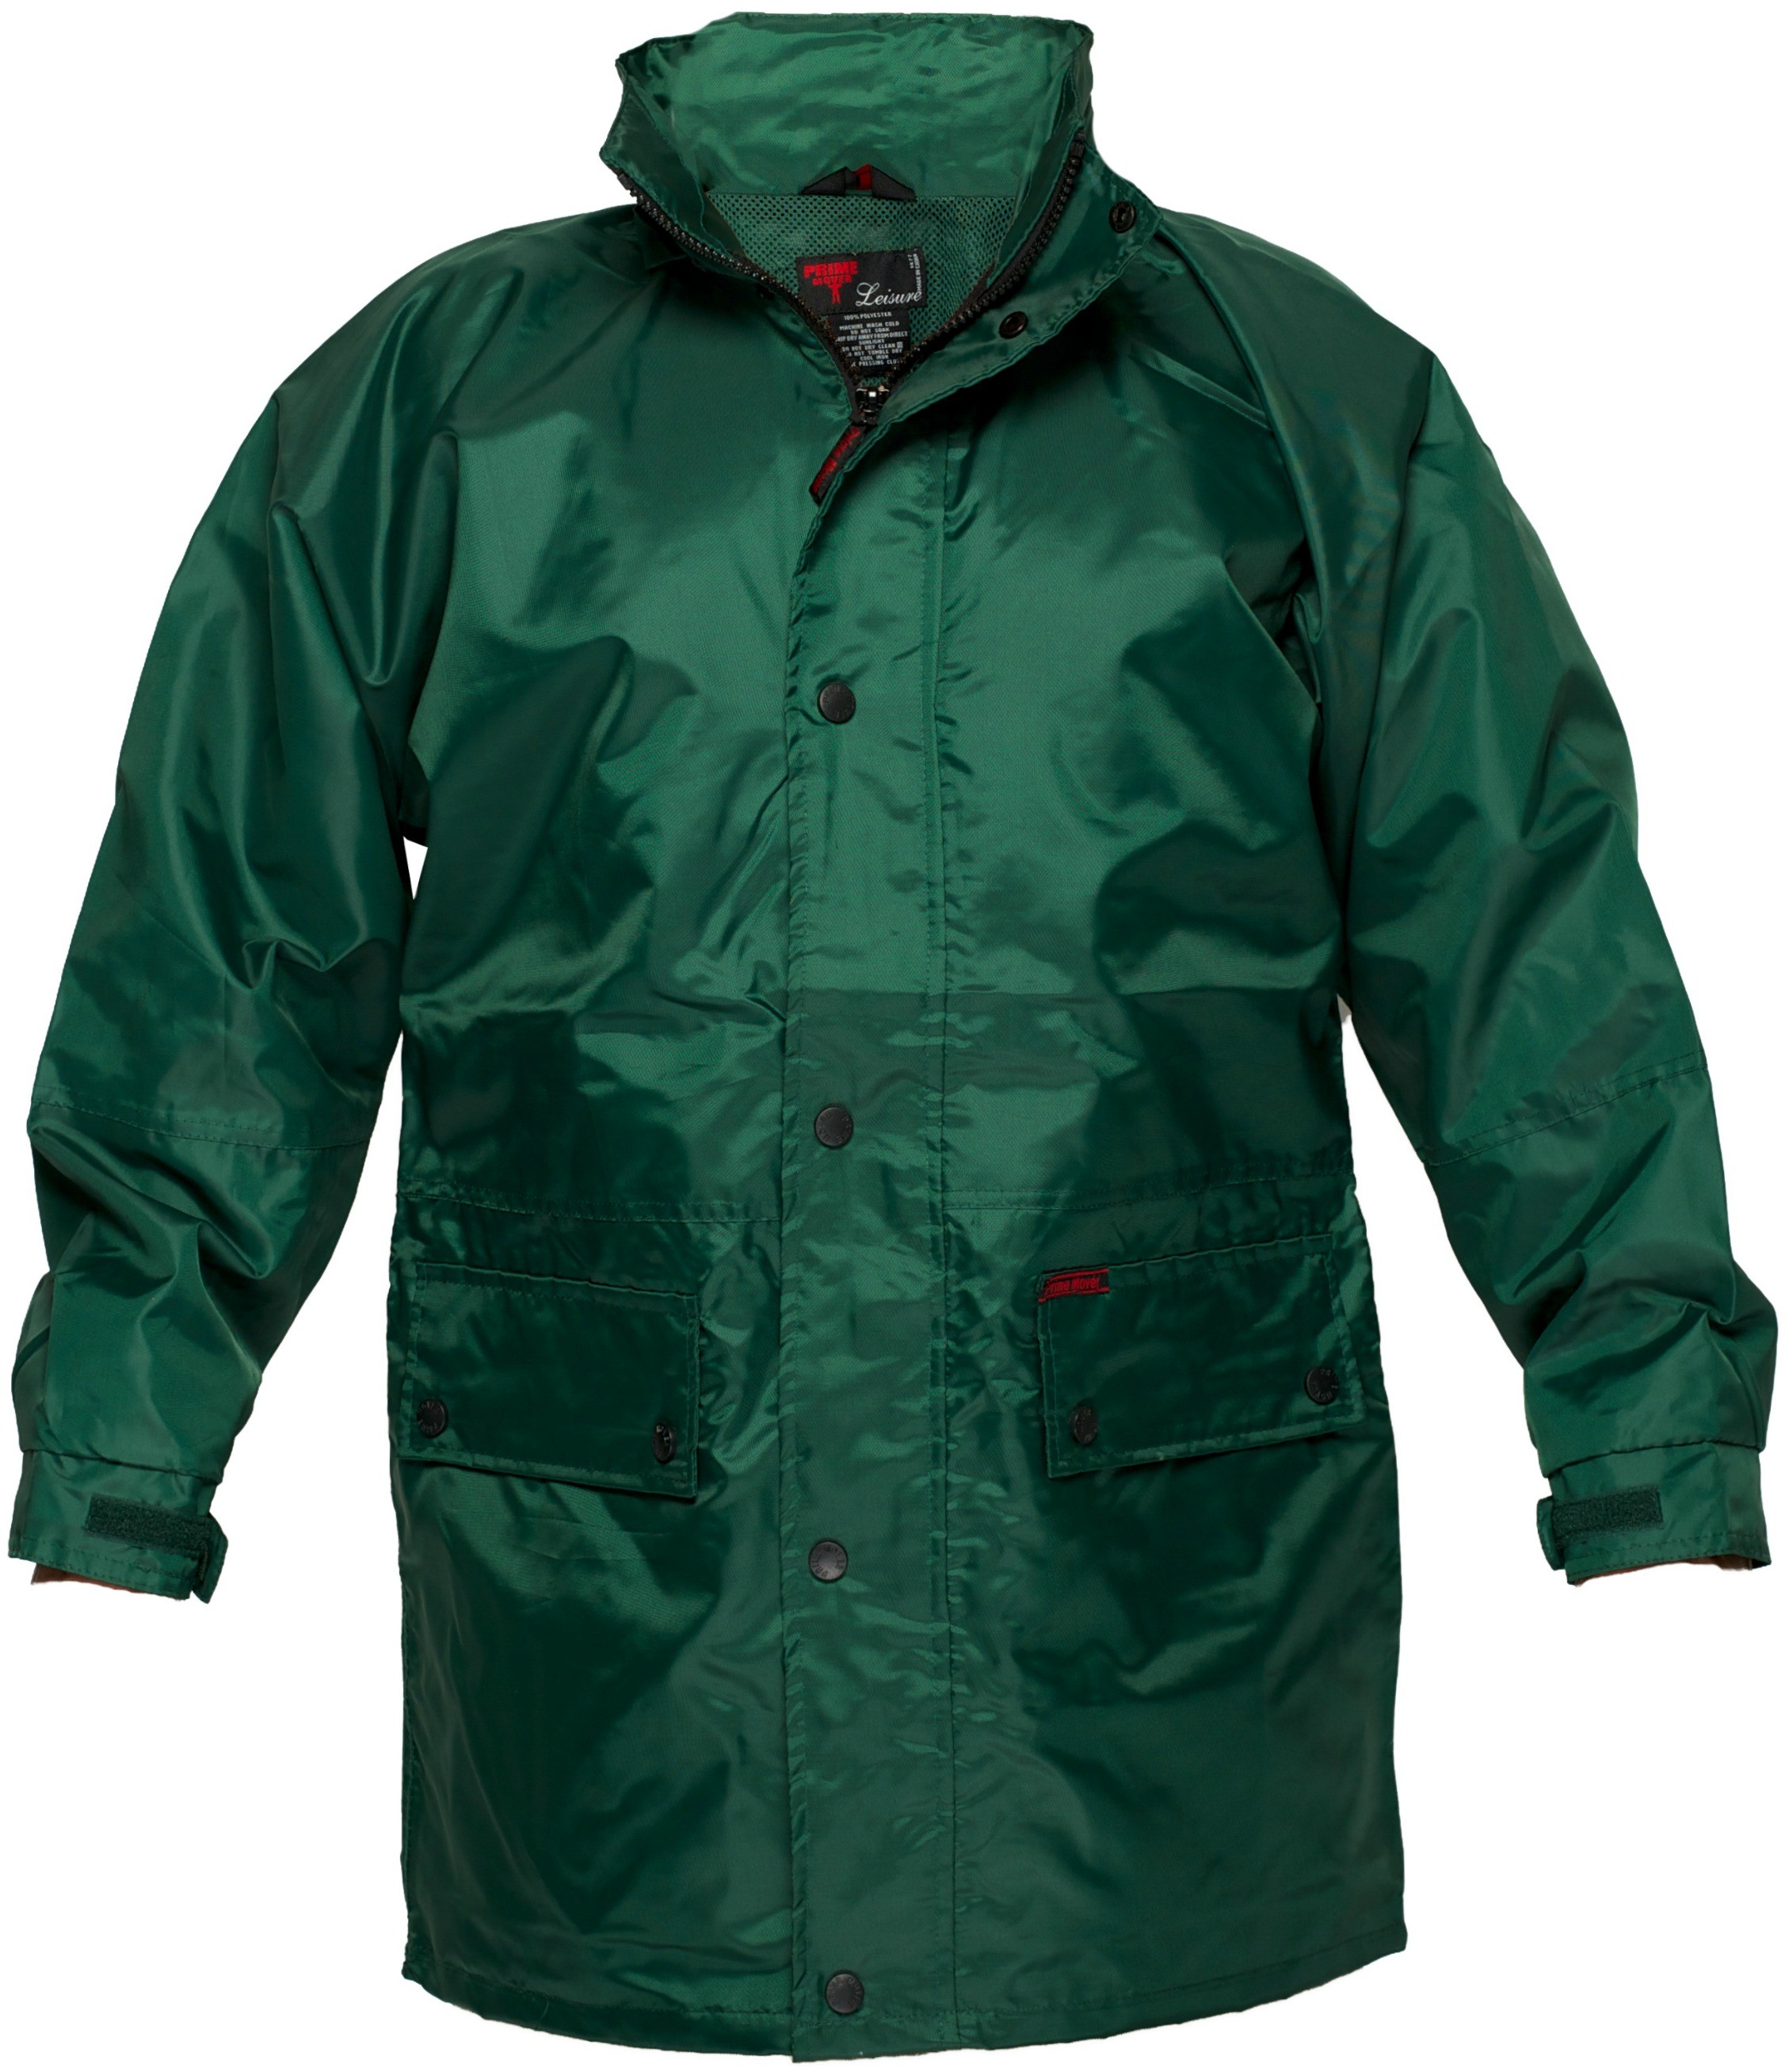 Waterproof Jacket - Jackets - WORKWEAR - Our Range